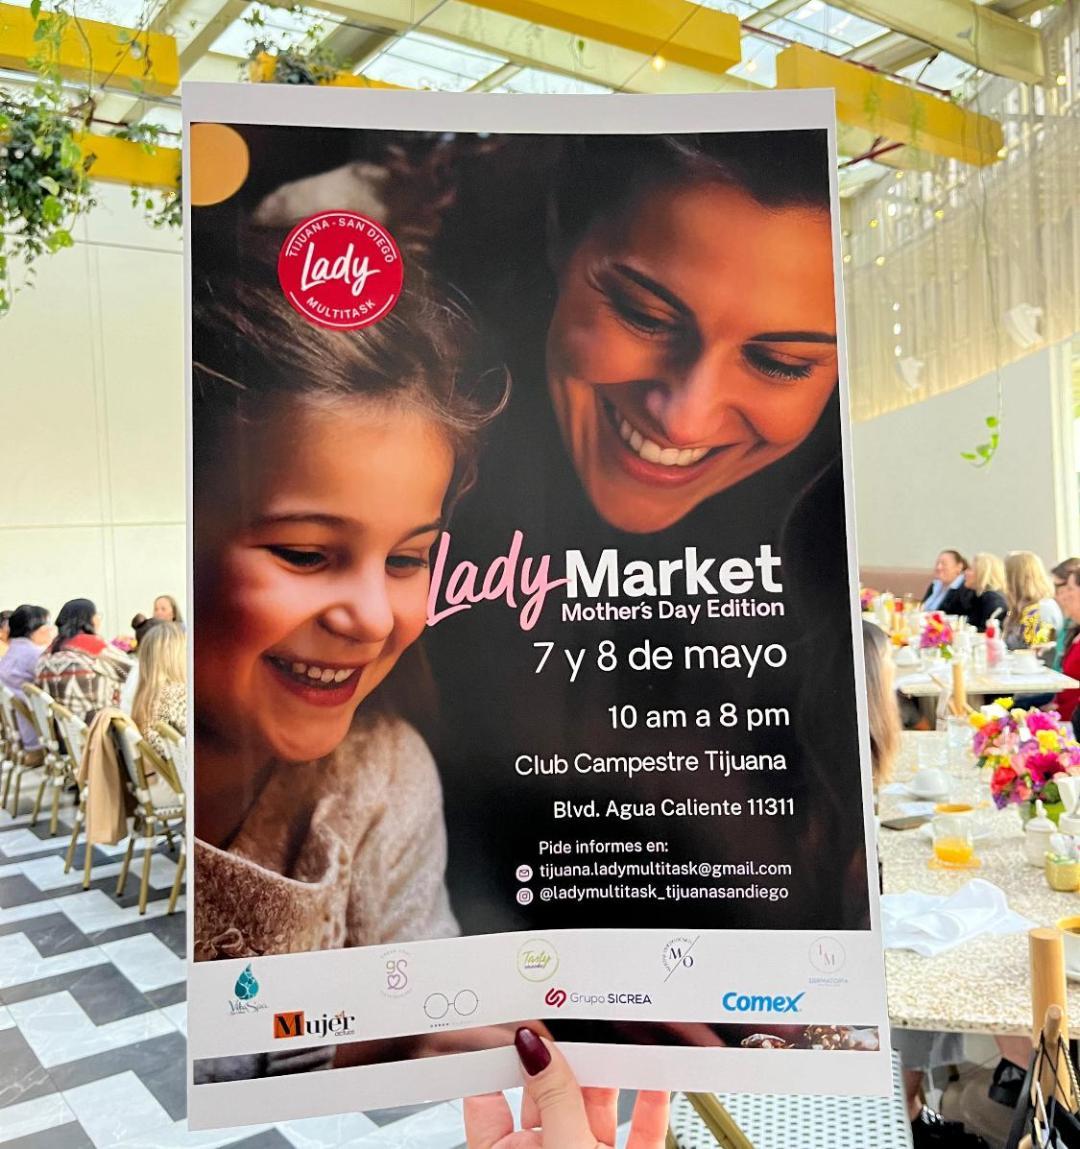 Preparan el “Lady Market” Mother´s Day Edition para promover el emprendimiento local